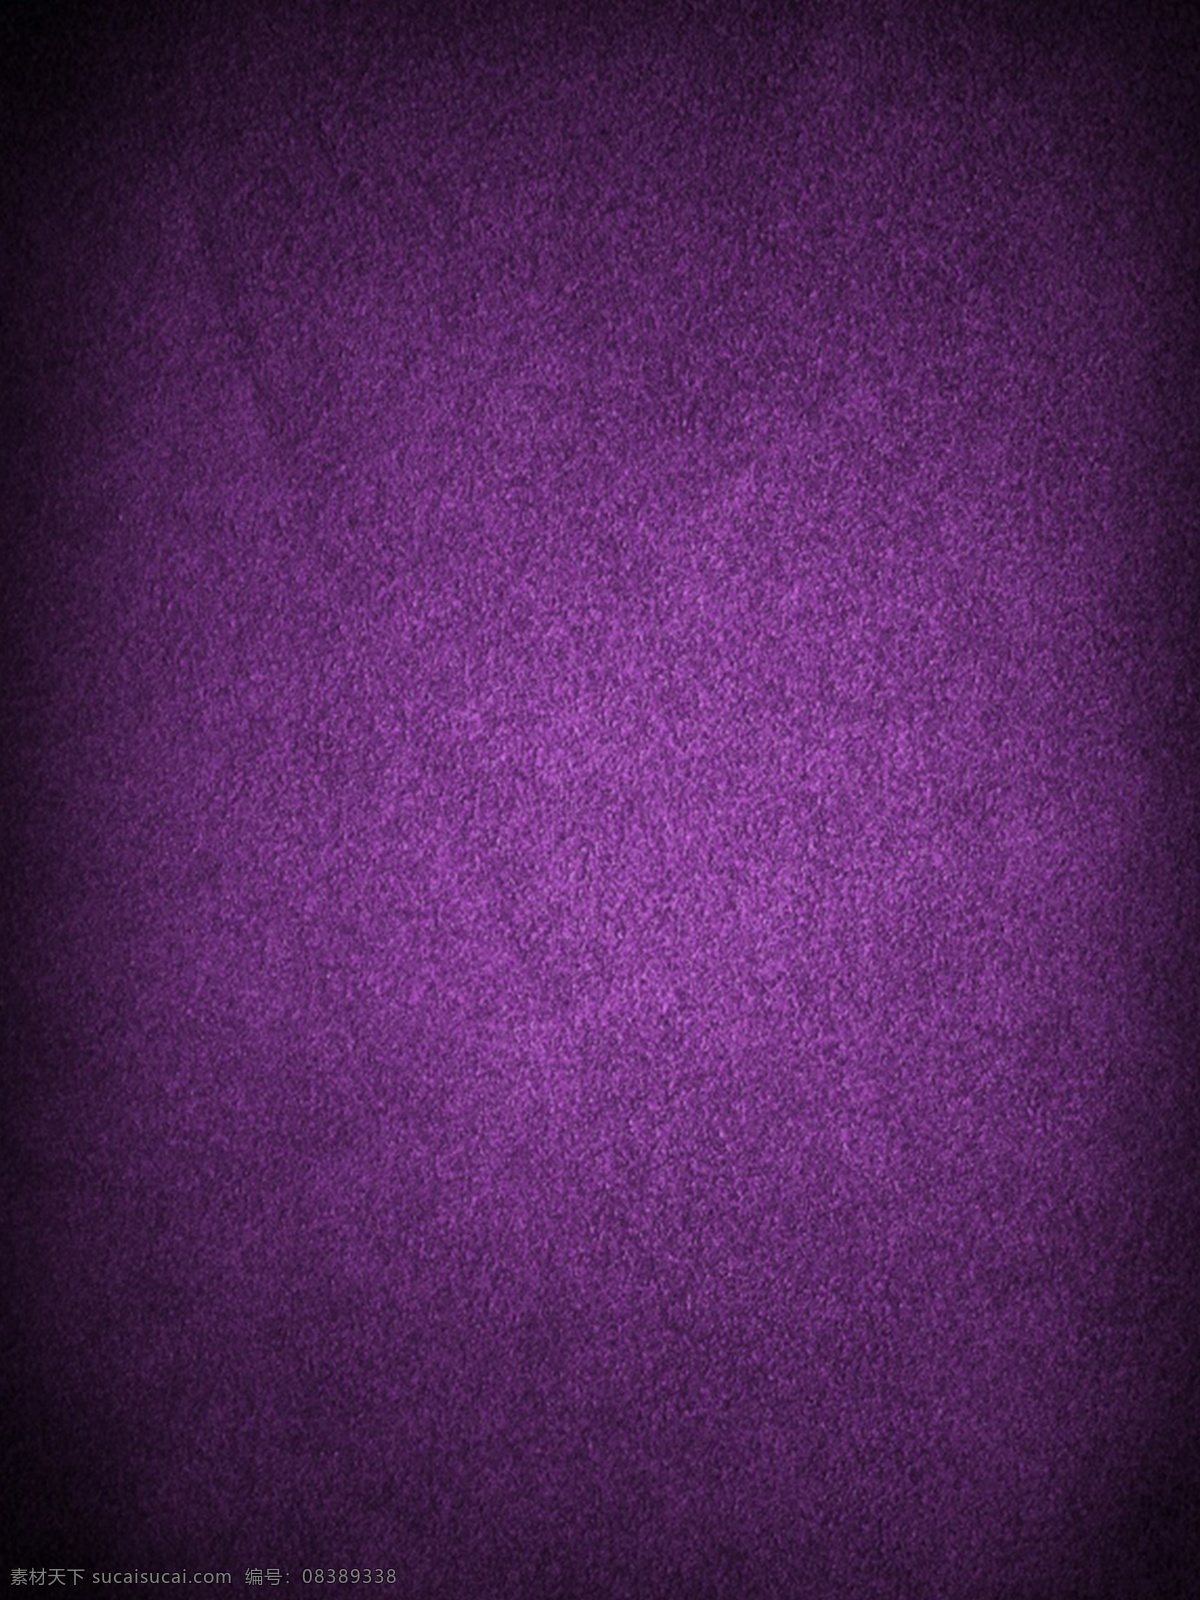 深 紫色 磨砂 背景 图 深紫色背景 磨砂背景 万圣节 主题 商务风背景 暗黑系背景